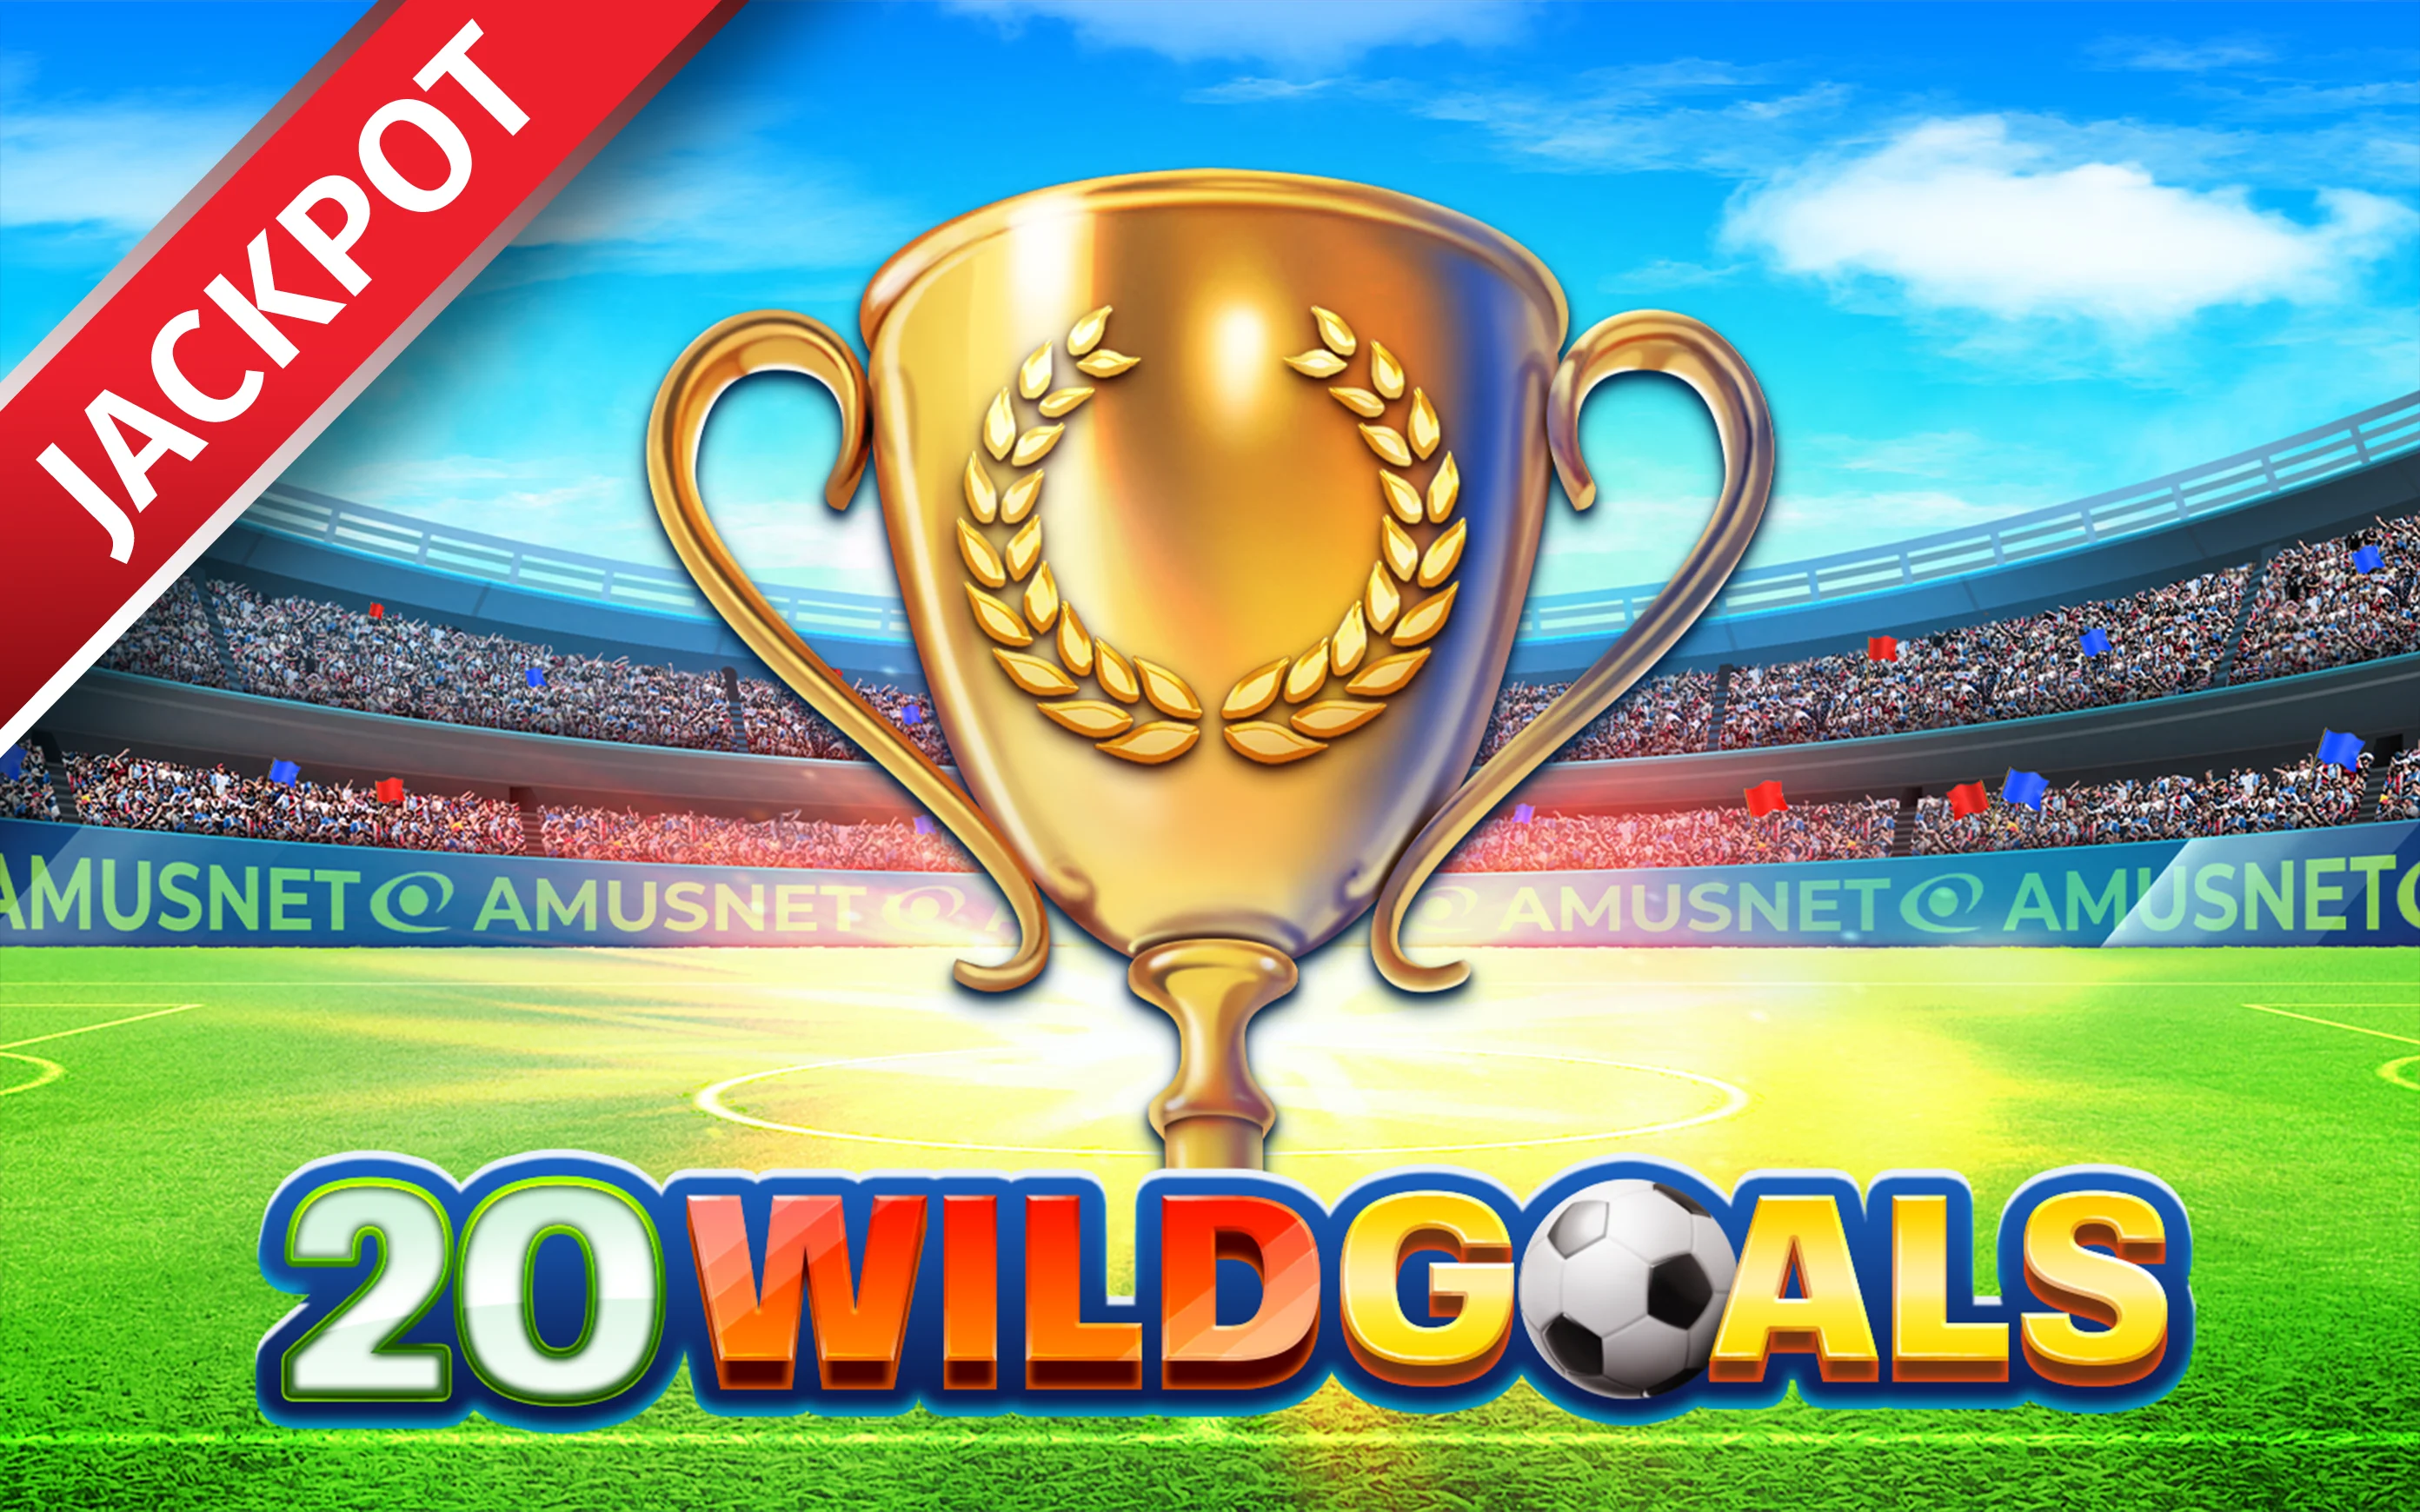 Starcasino.be online casino üzerinden 20 Wild Goals oynayın